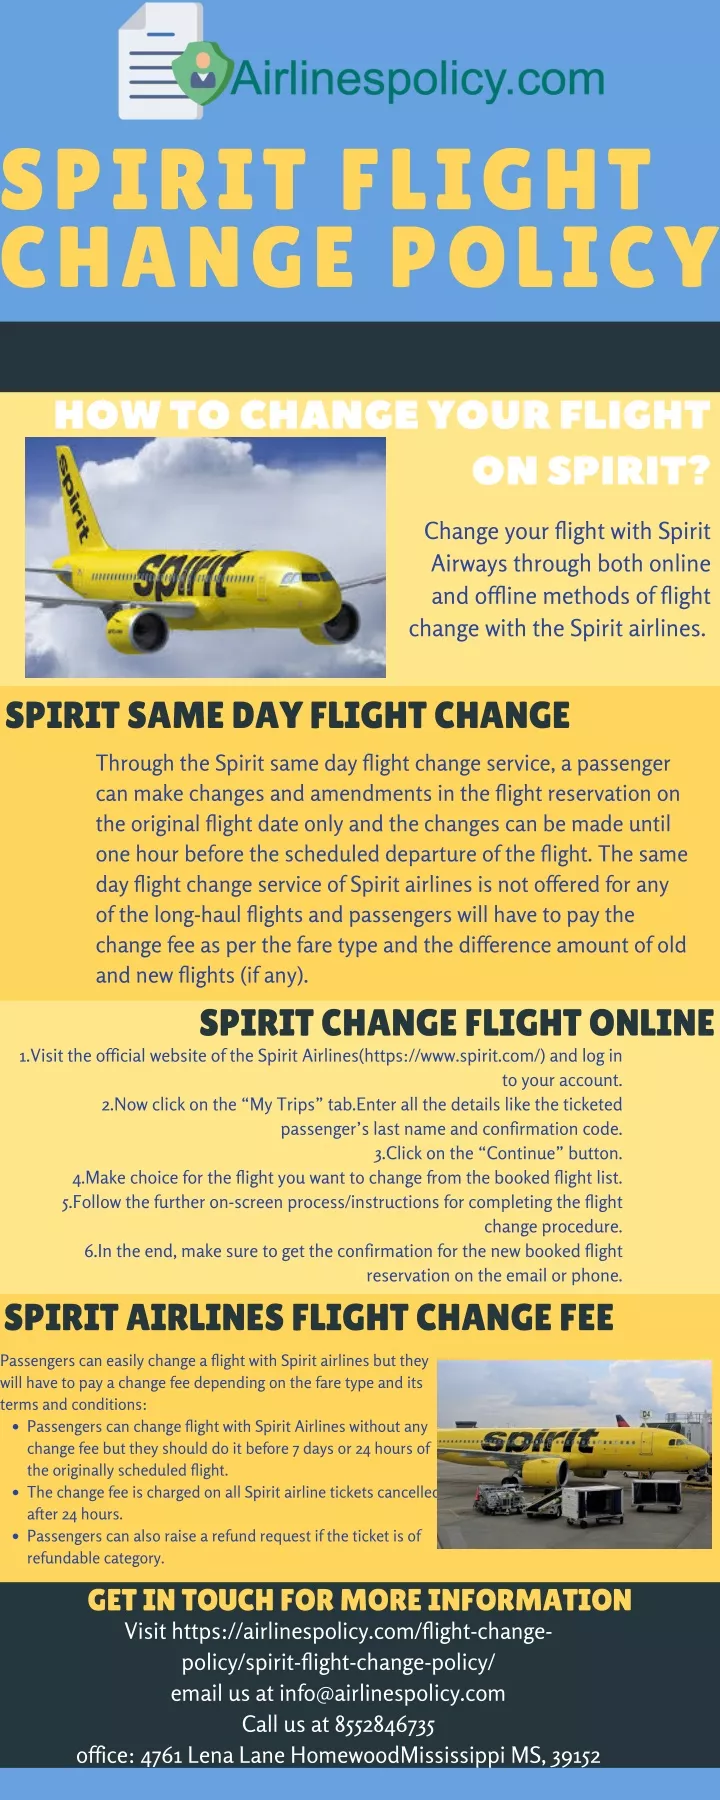 spirit flight change policy